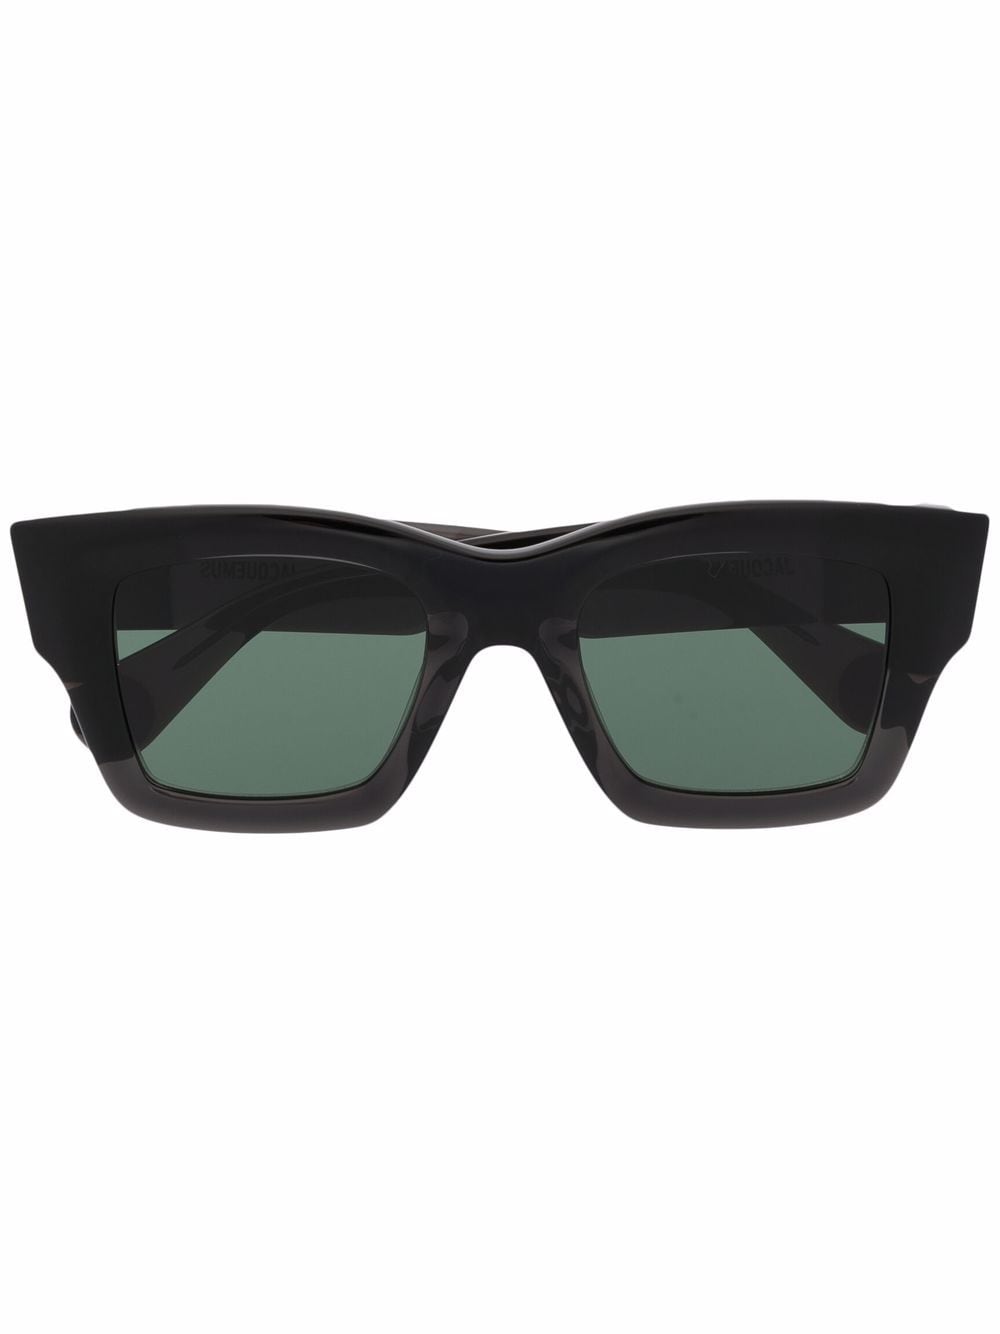 Jacquemus Les Lunettes D-frame sunglasses - Black von Jacquemus